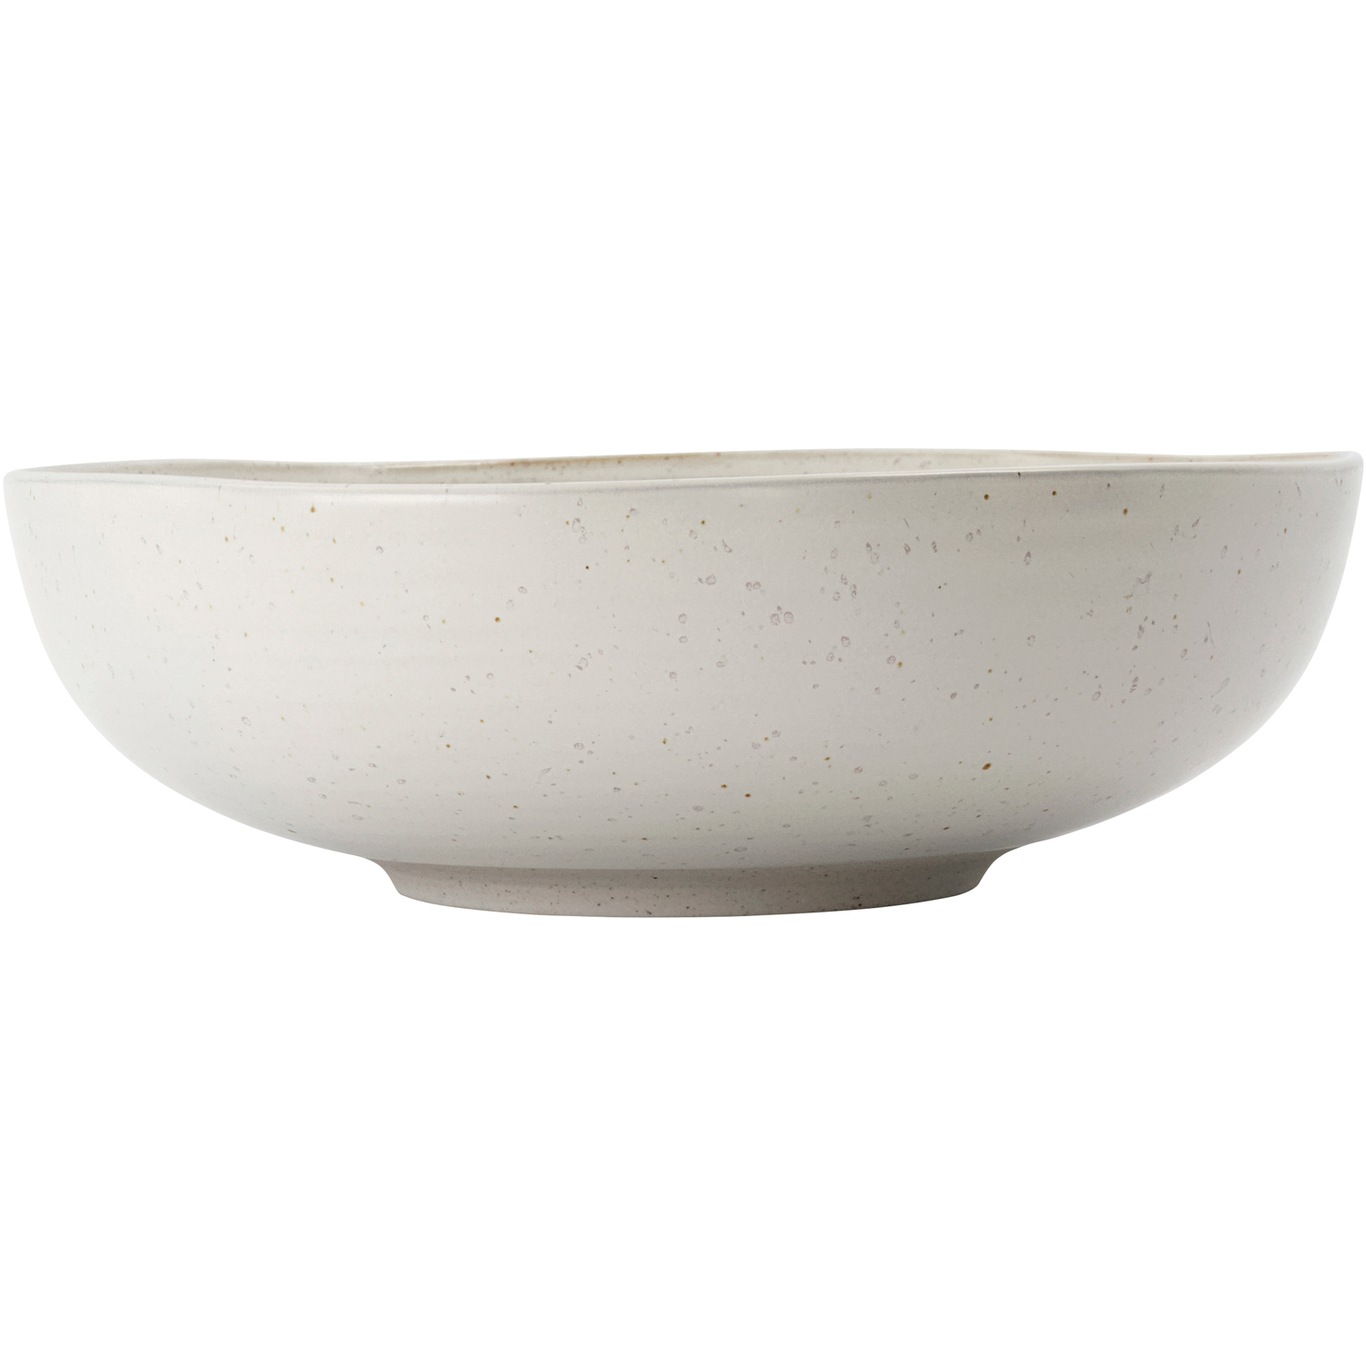 Pion Serving Bowl 22 cm, Grey / White